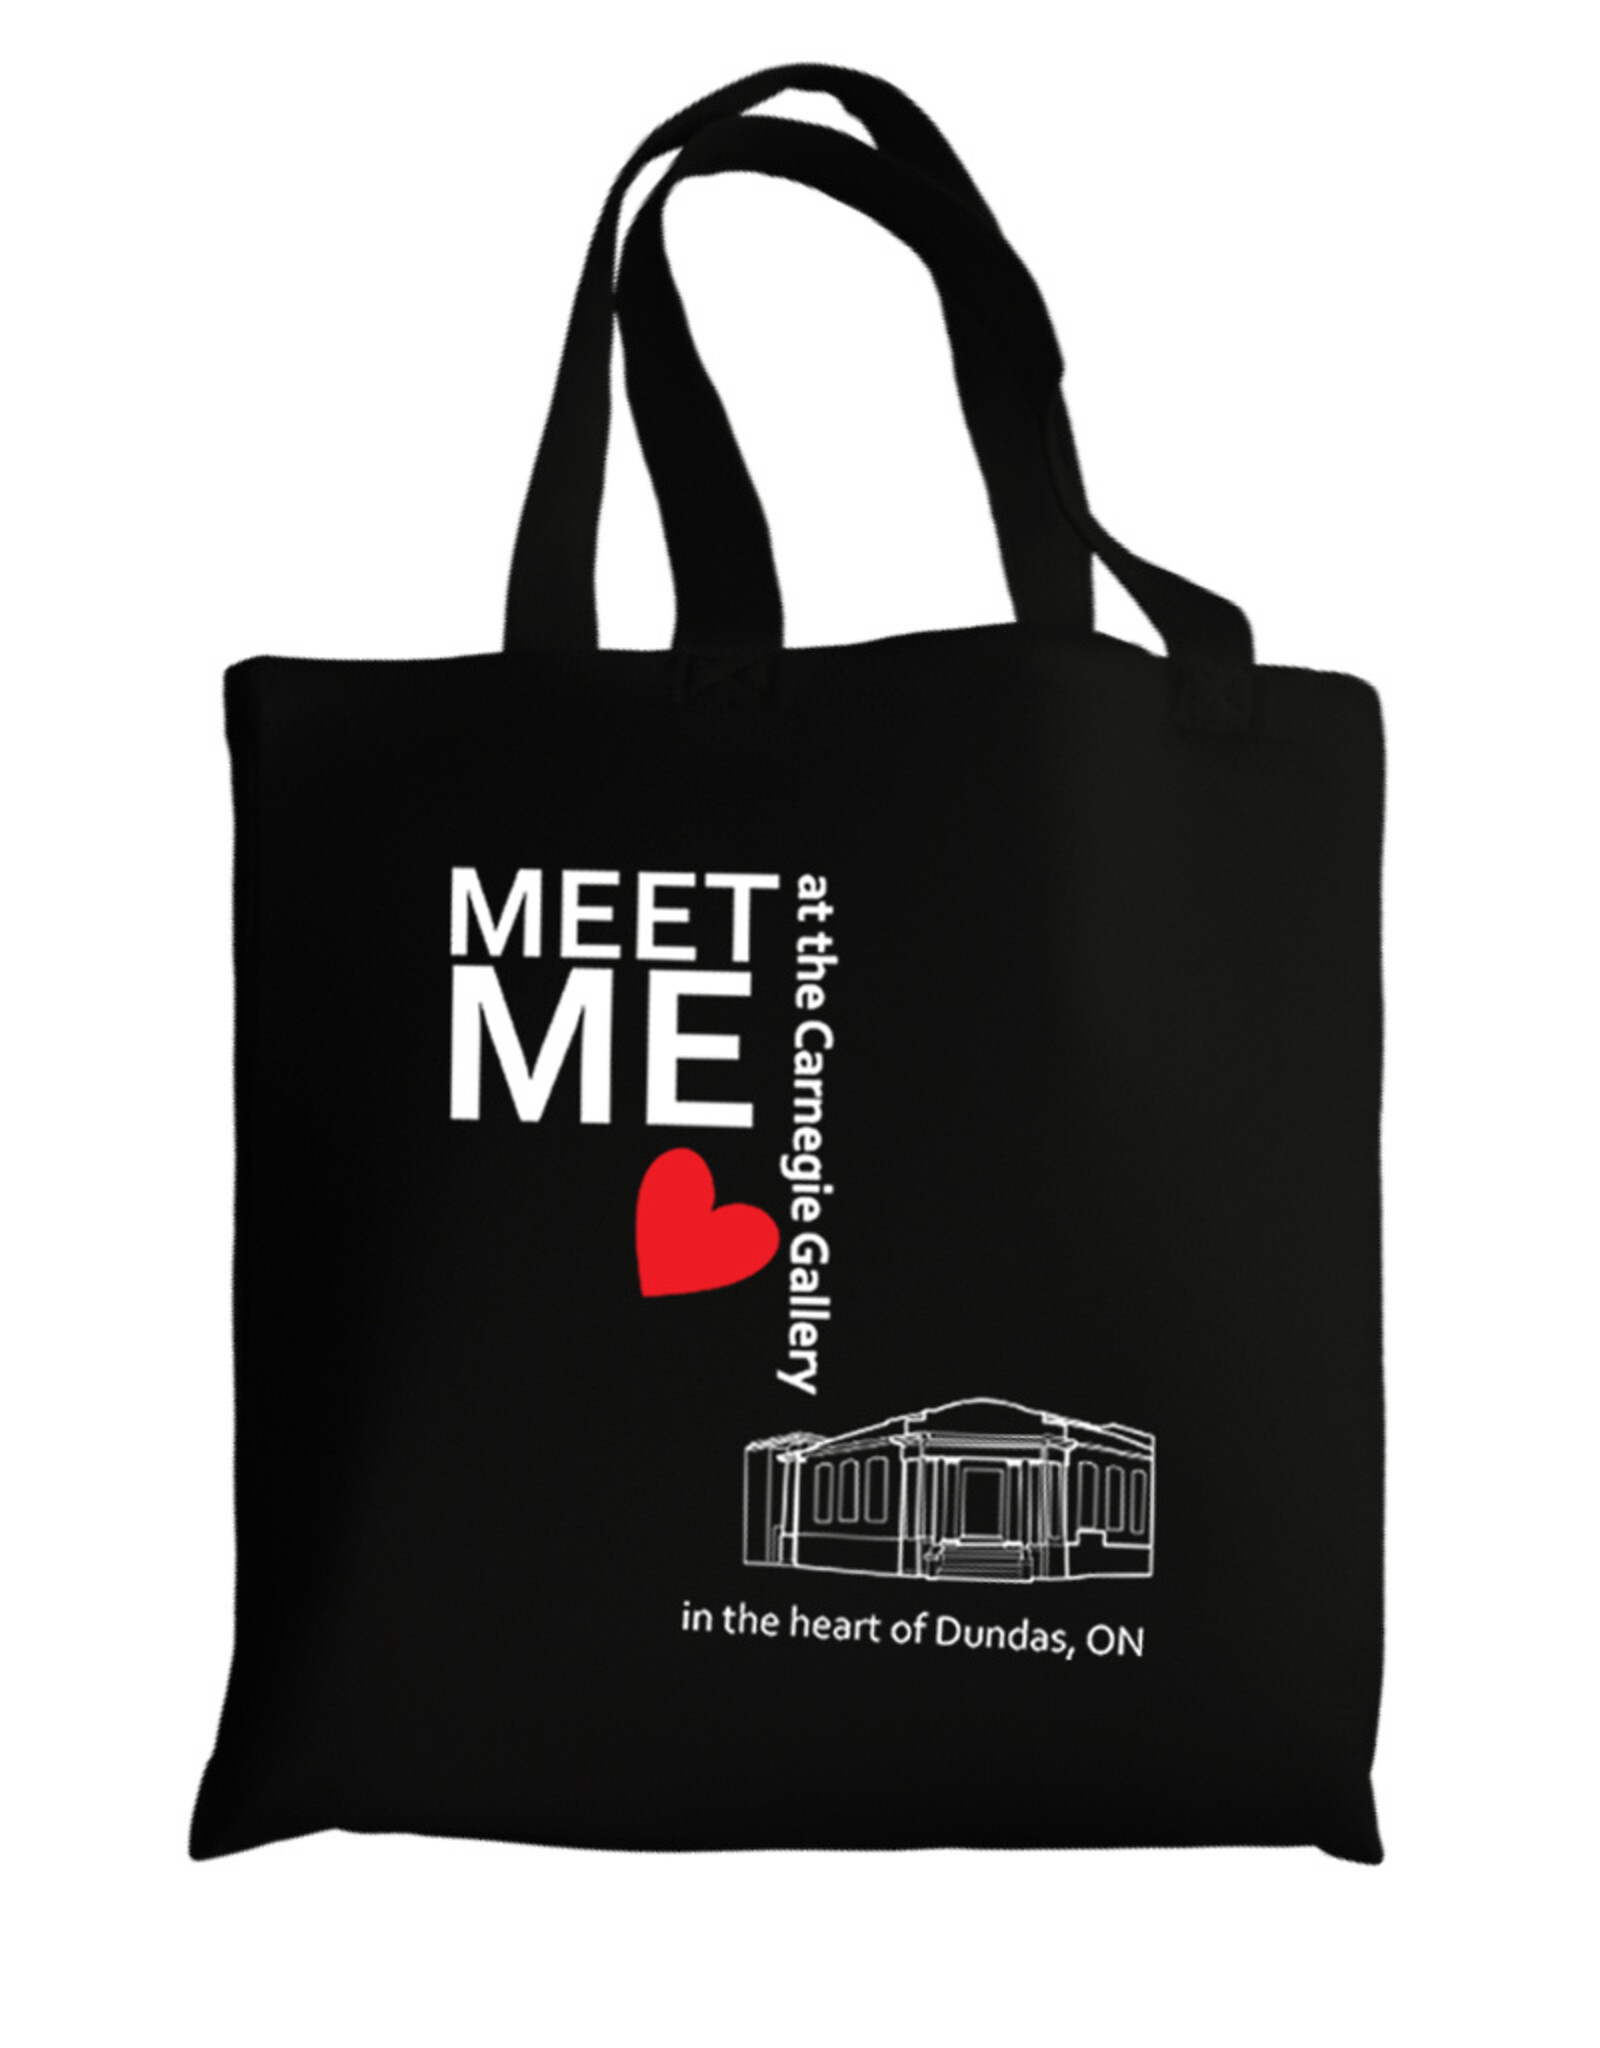 Meet Me at the Carnegie Gallery Tote Bag, Black, 15” W x 16” H